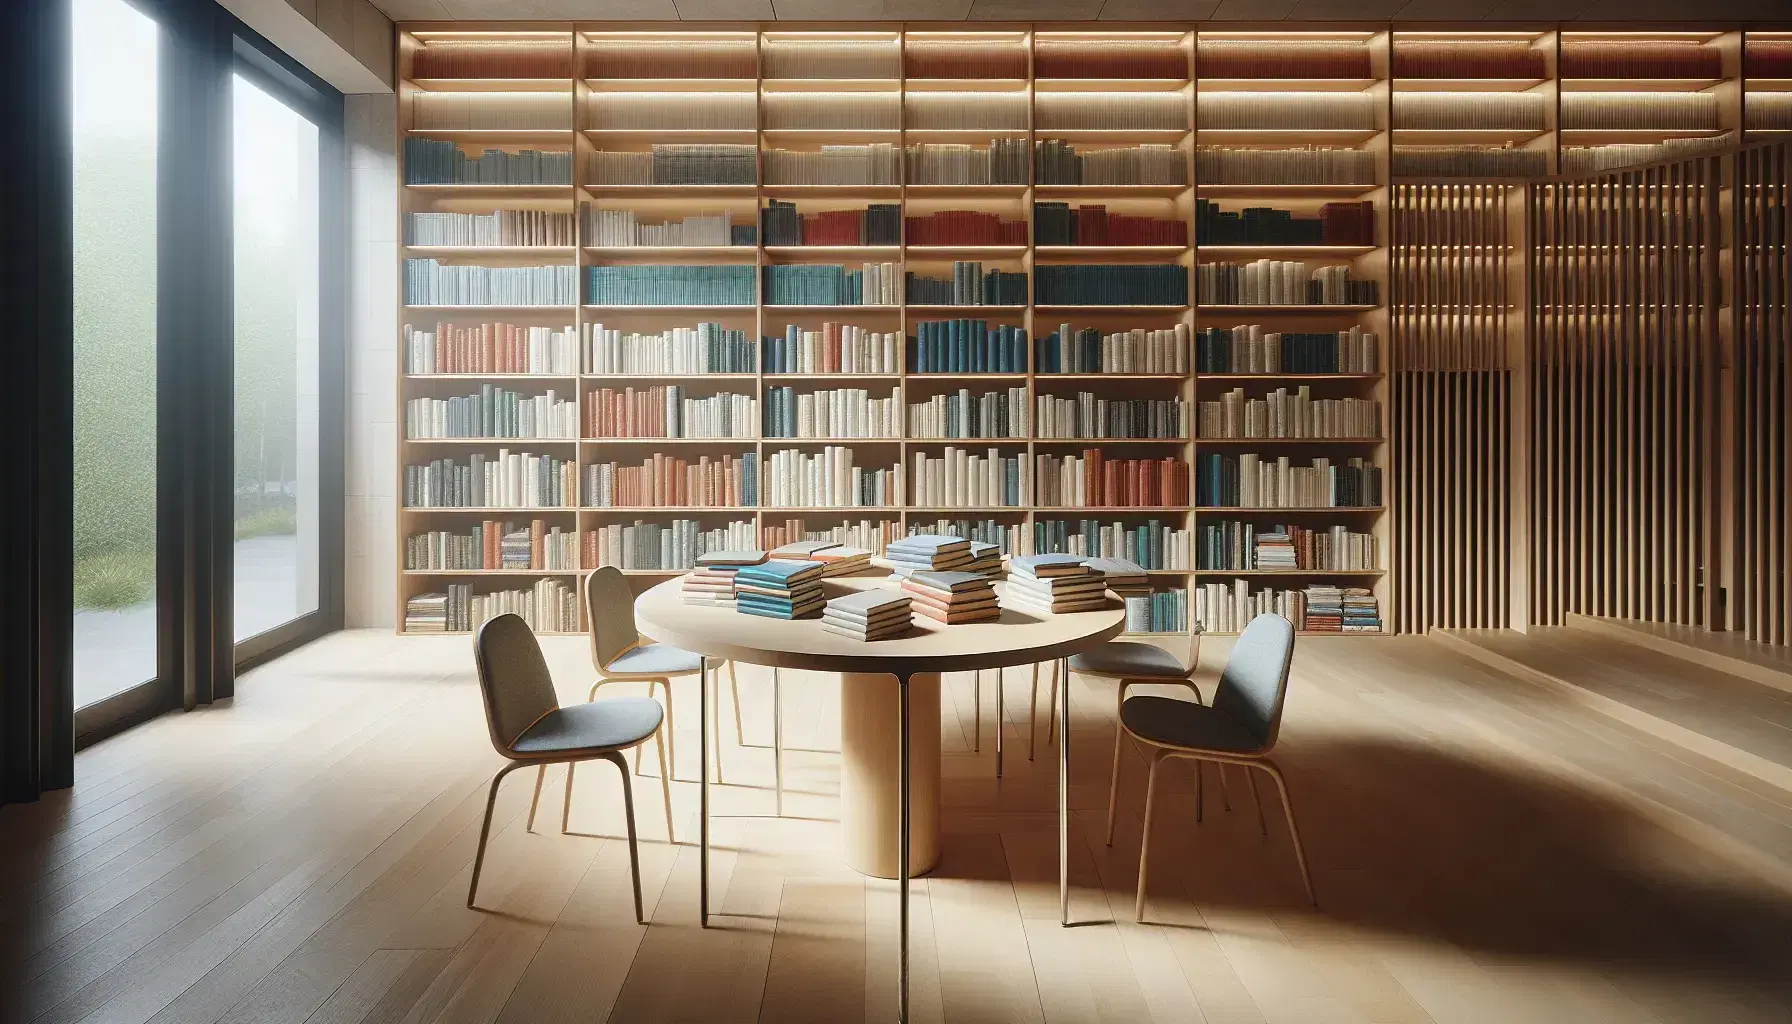 Biblioteca moderna y espaciosa con mesa de madera clara, libros de colores sin texto y estantes llenos, luz natural y figura humana leyendo.